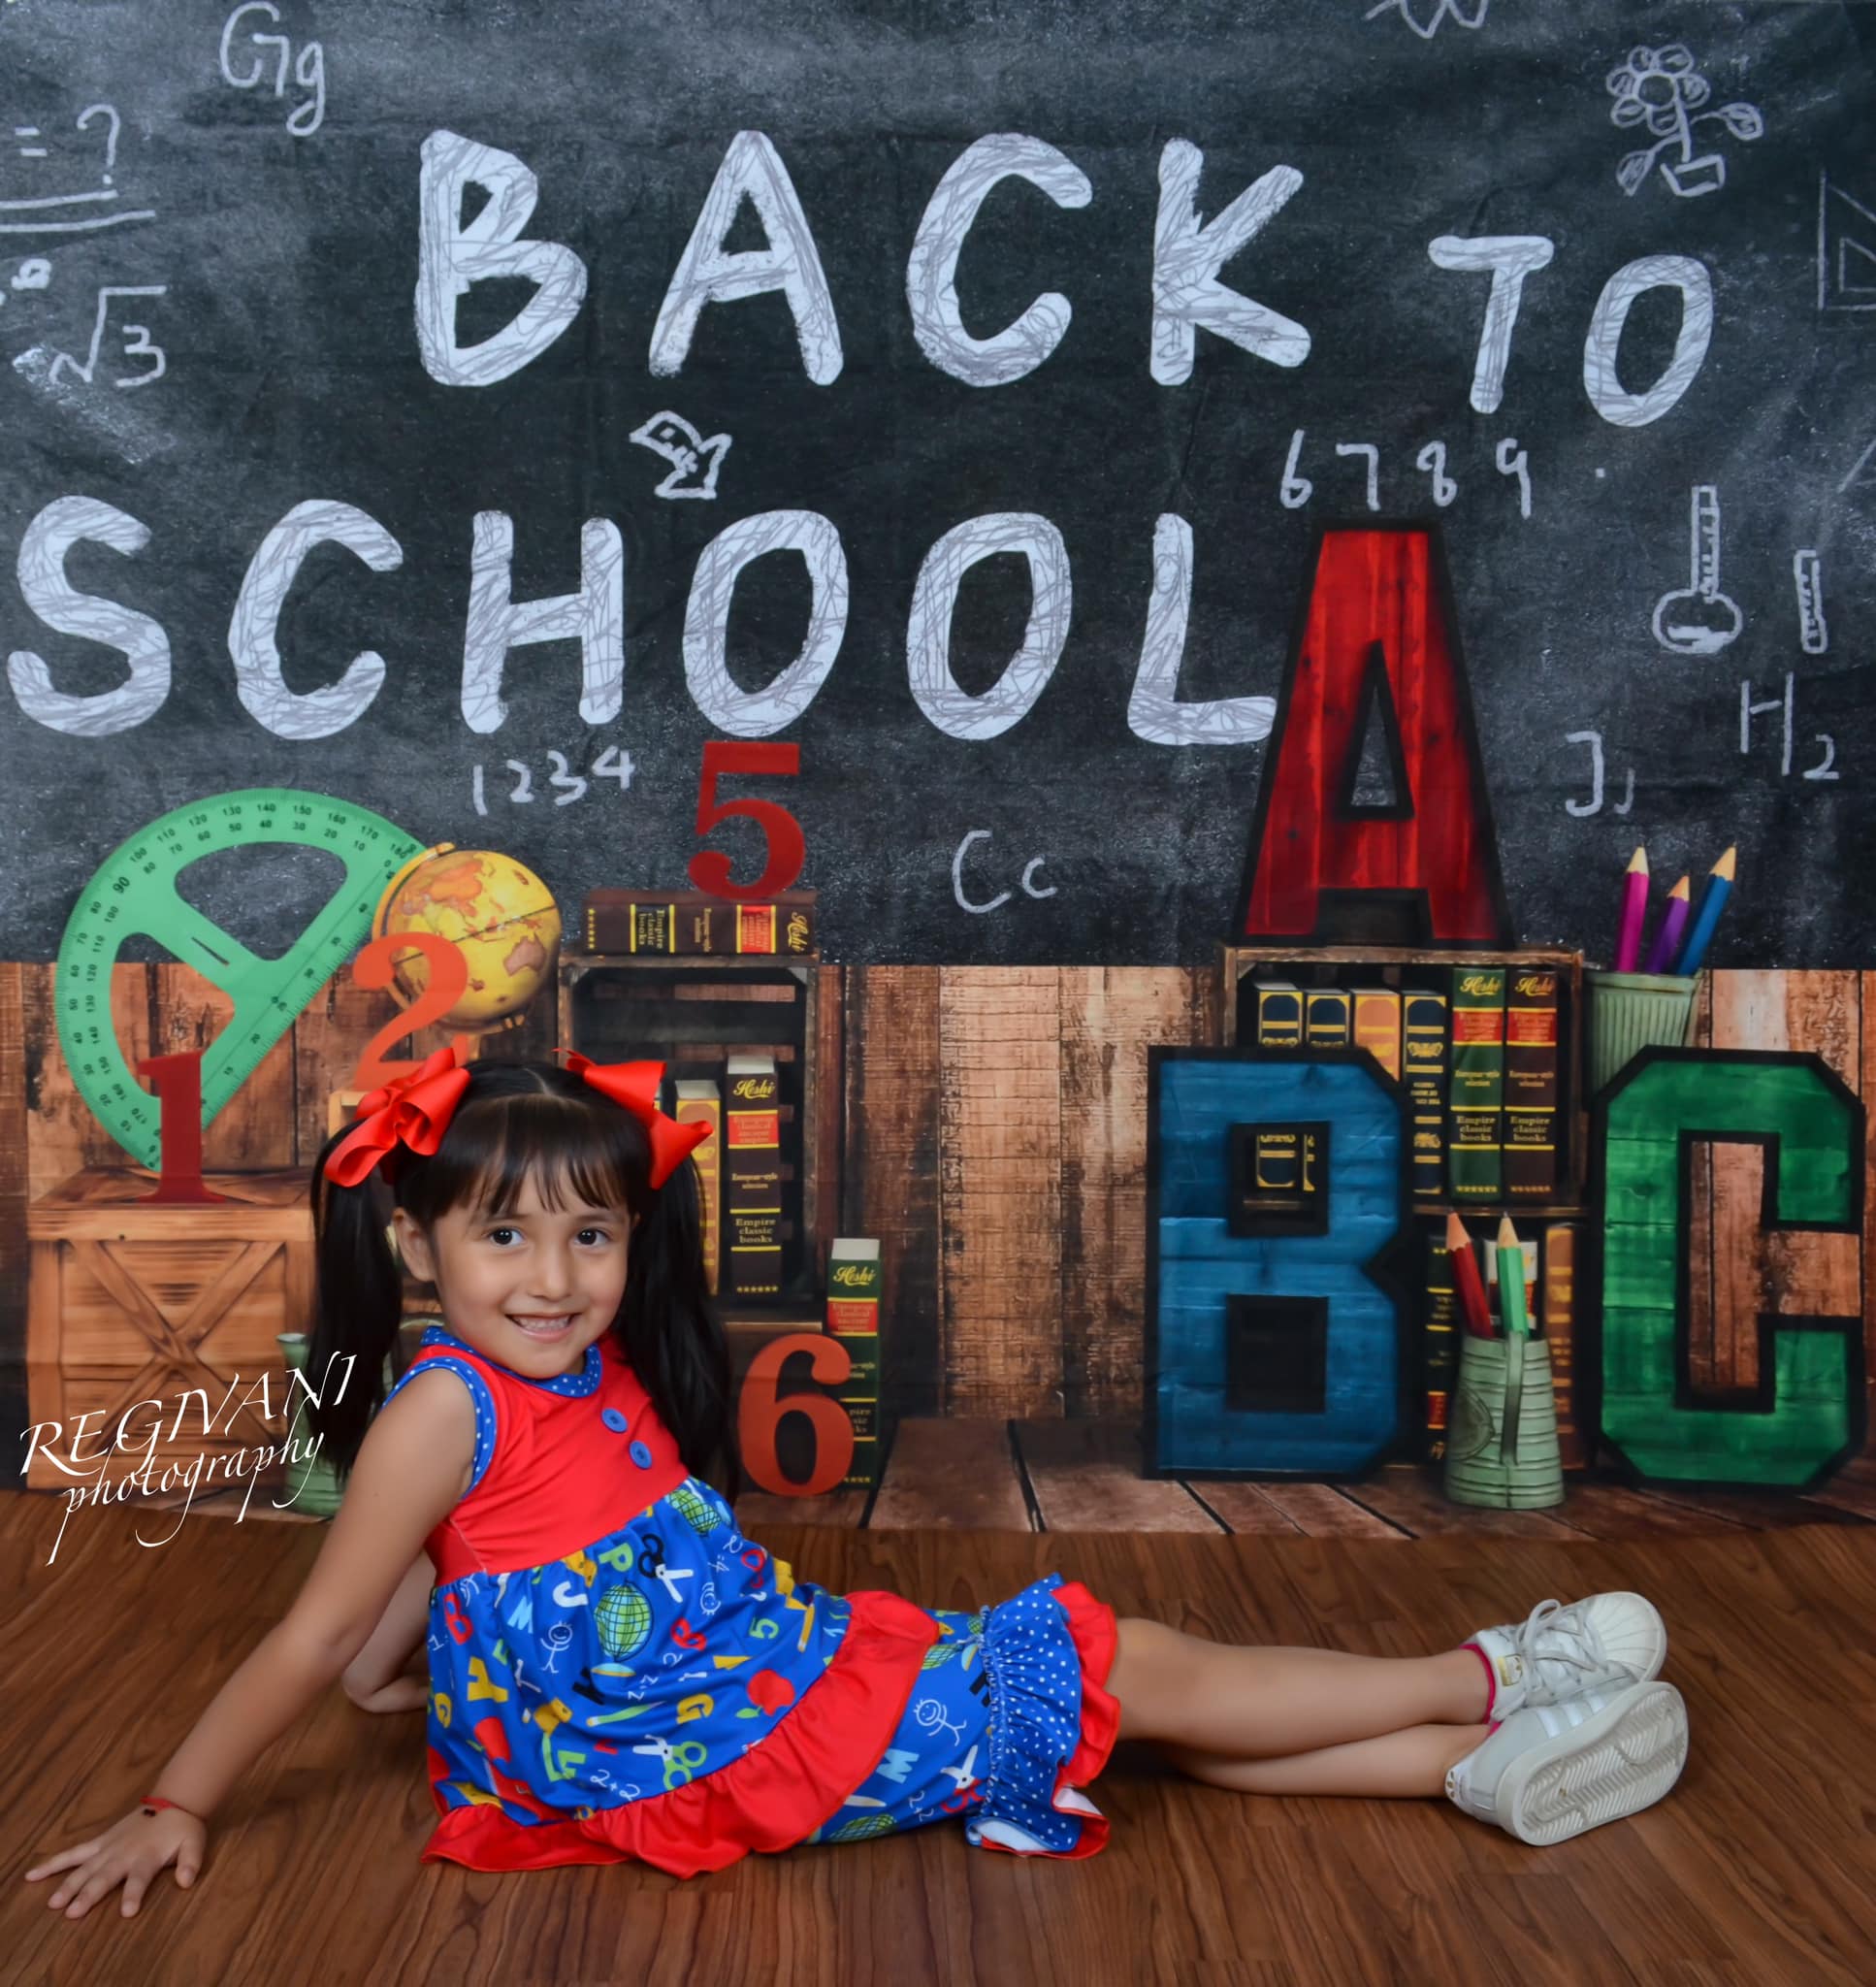 Kate Back To School Backdrop Blackboard Stationery Designed by Emetselch